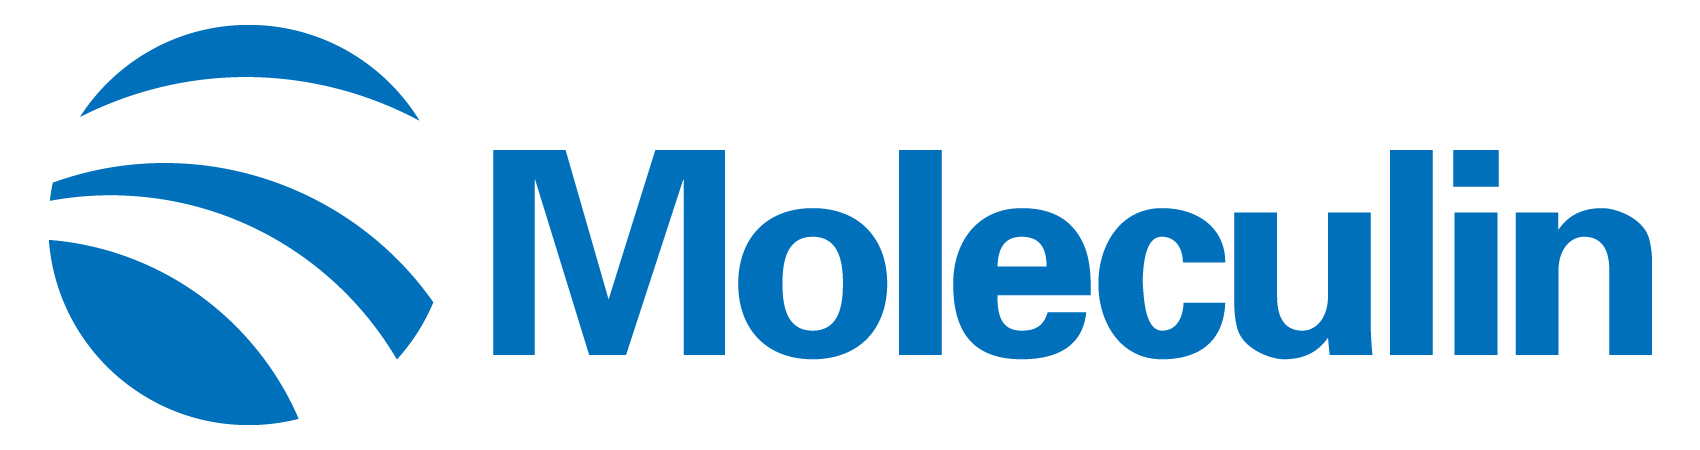 moleculin-logo_horiza30.jpg